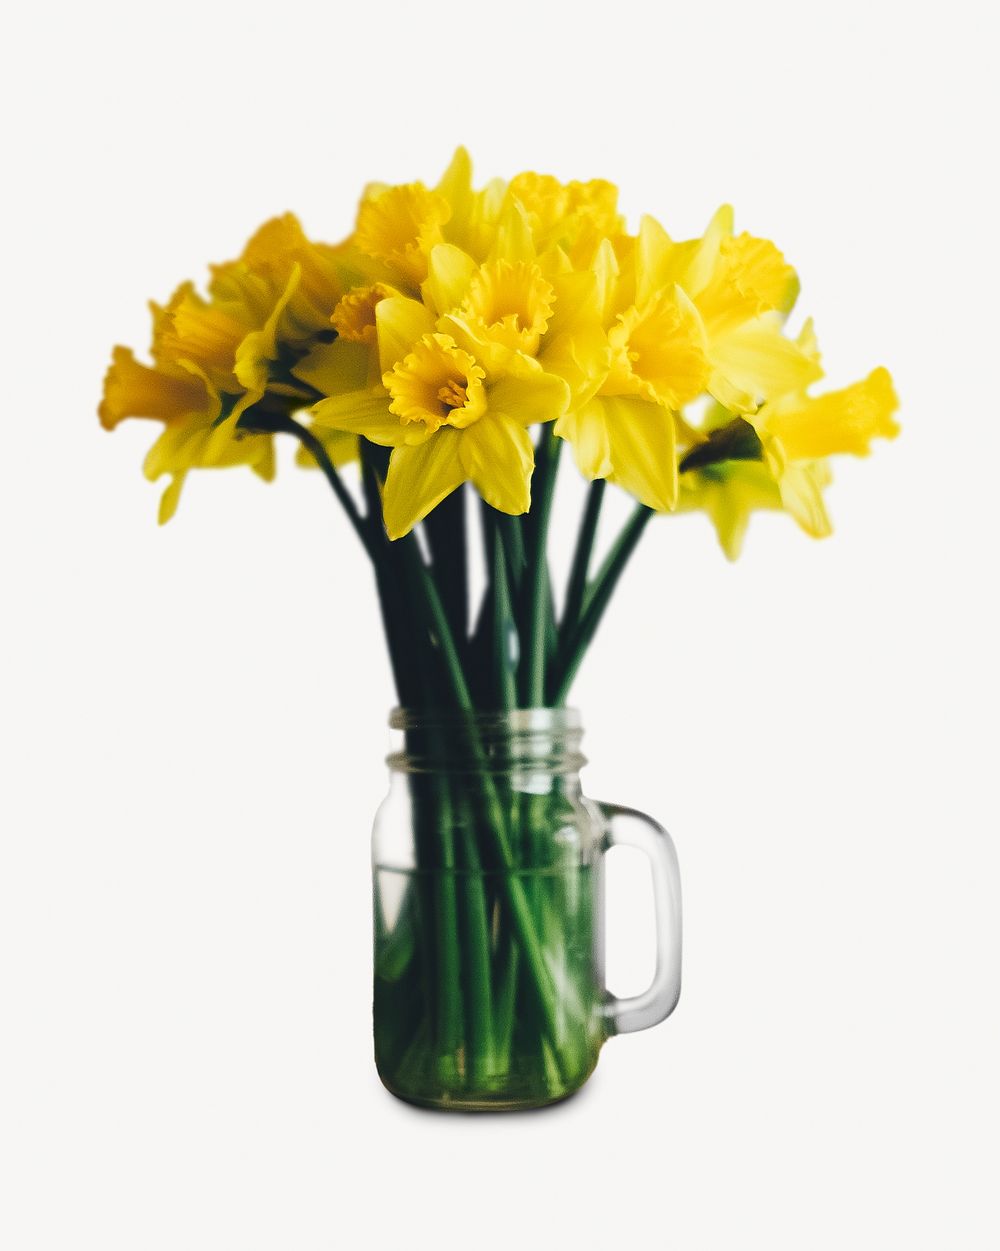 Daffodil flower vase isolated design